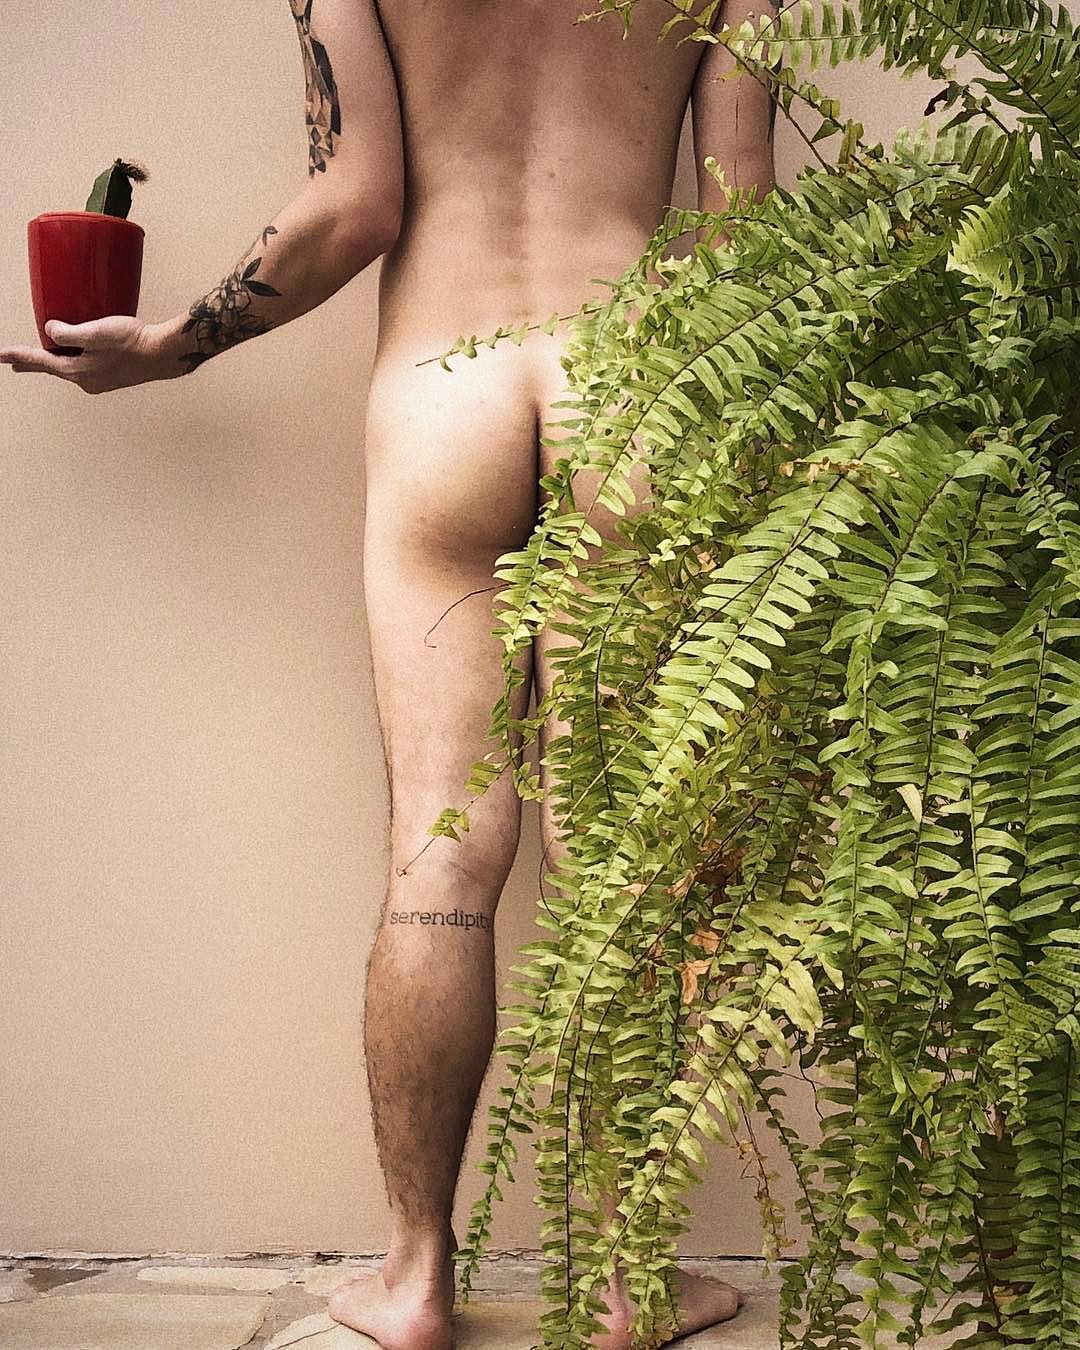 Популярный Instagram-аккаунт с полуголыми мужчинами и растениями